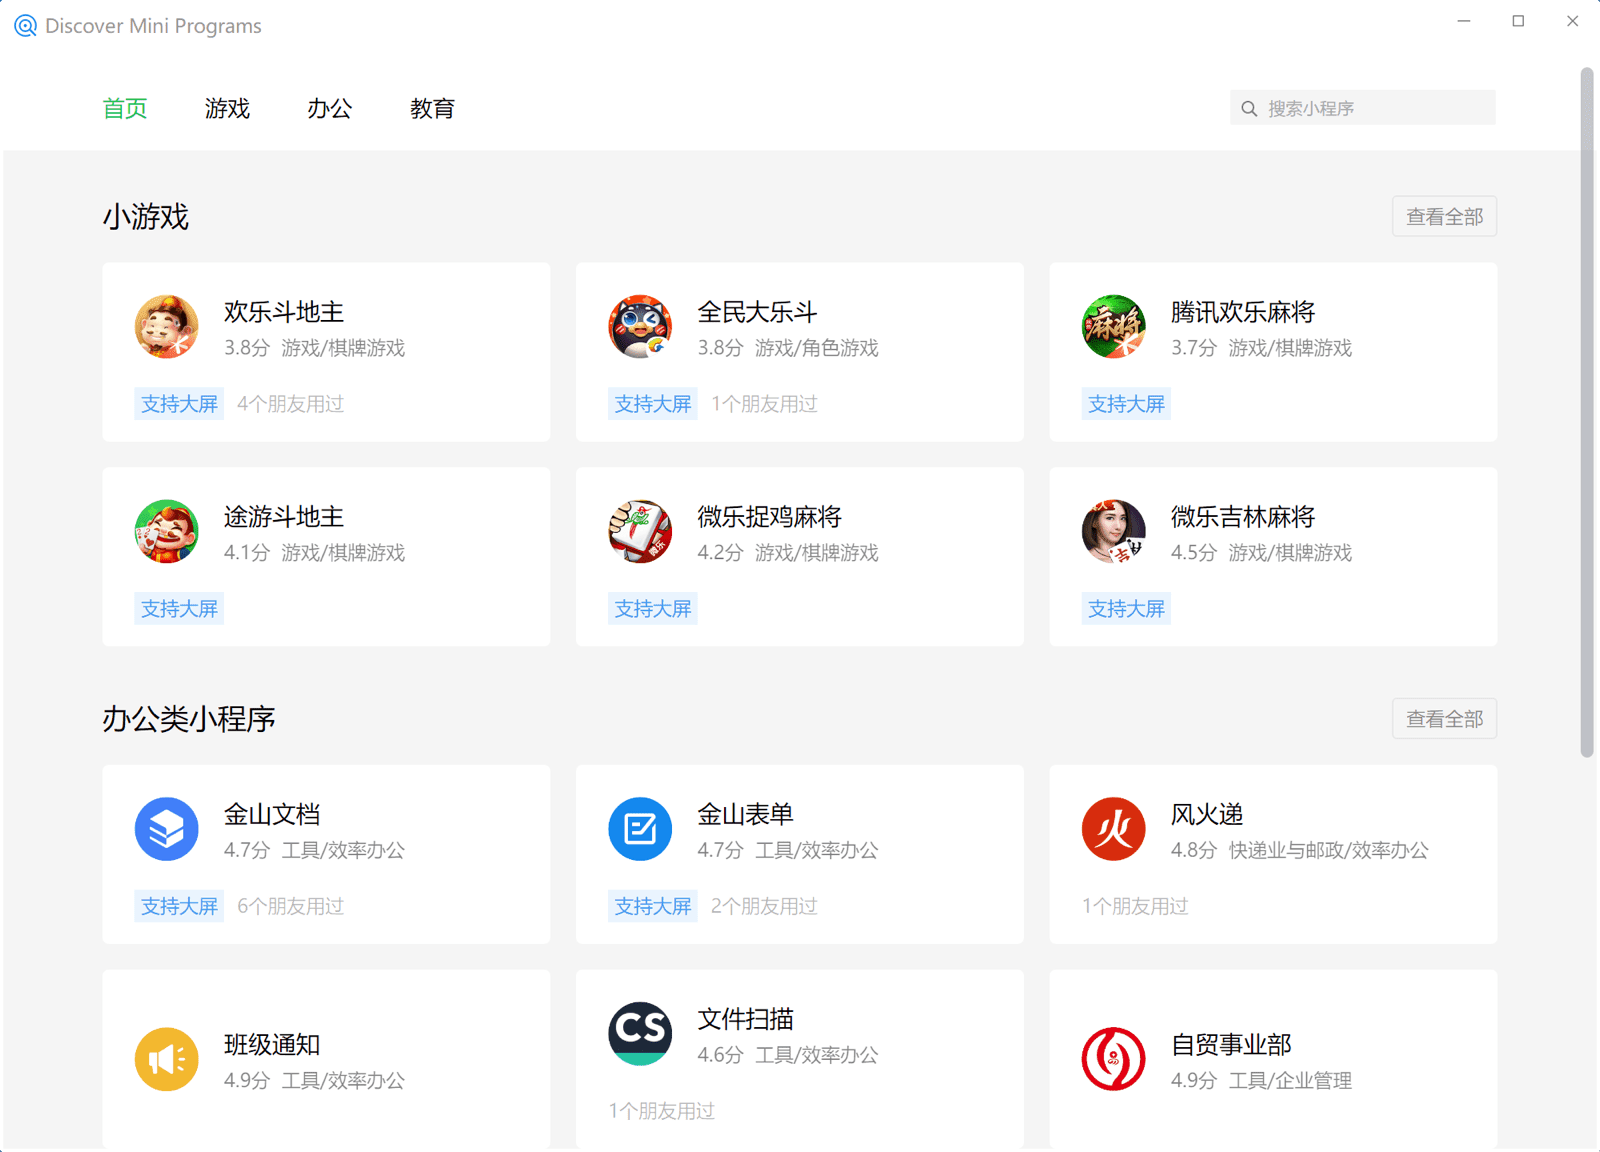 WeChat Windows クライアントでのミニアプリ検索。ゲーム、ビジネス、教育など、さまざまなカテゴリでミニアプリが表示されています。